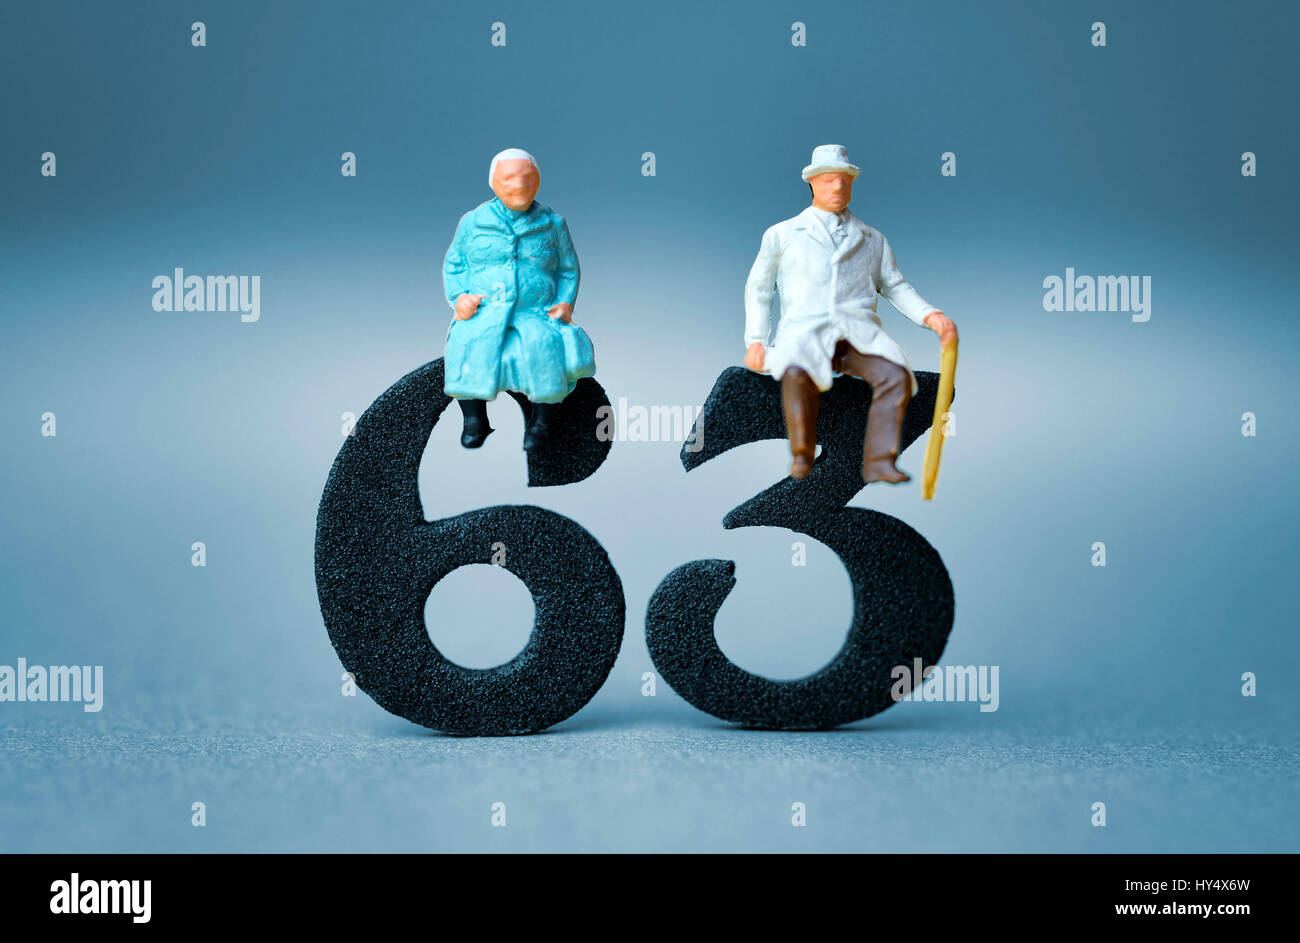 Senior citizen's pair on the number 63, symbolic photo pension at the age of 63 years, Seniorenpaar auf der Zahl 63, Symbolfoto Rente mit 63 Jahren Stock Photo